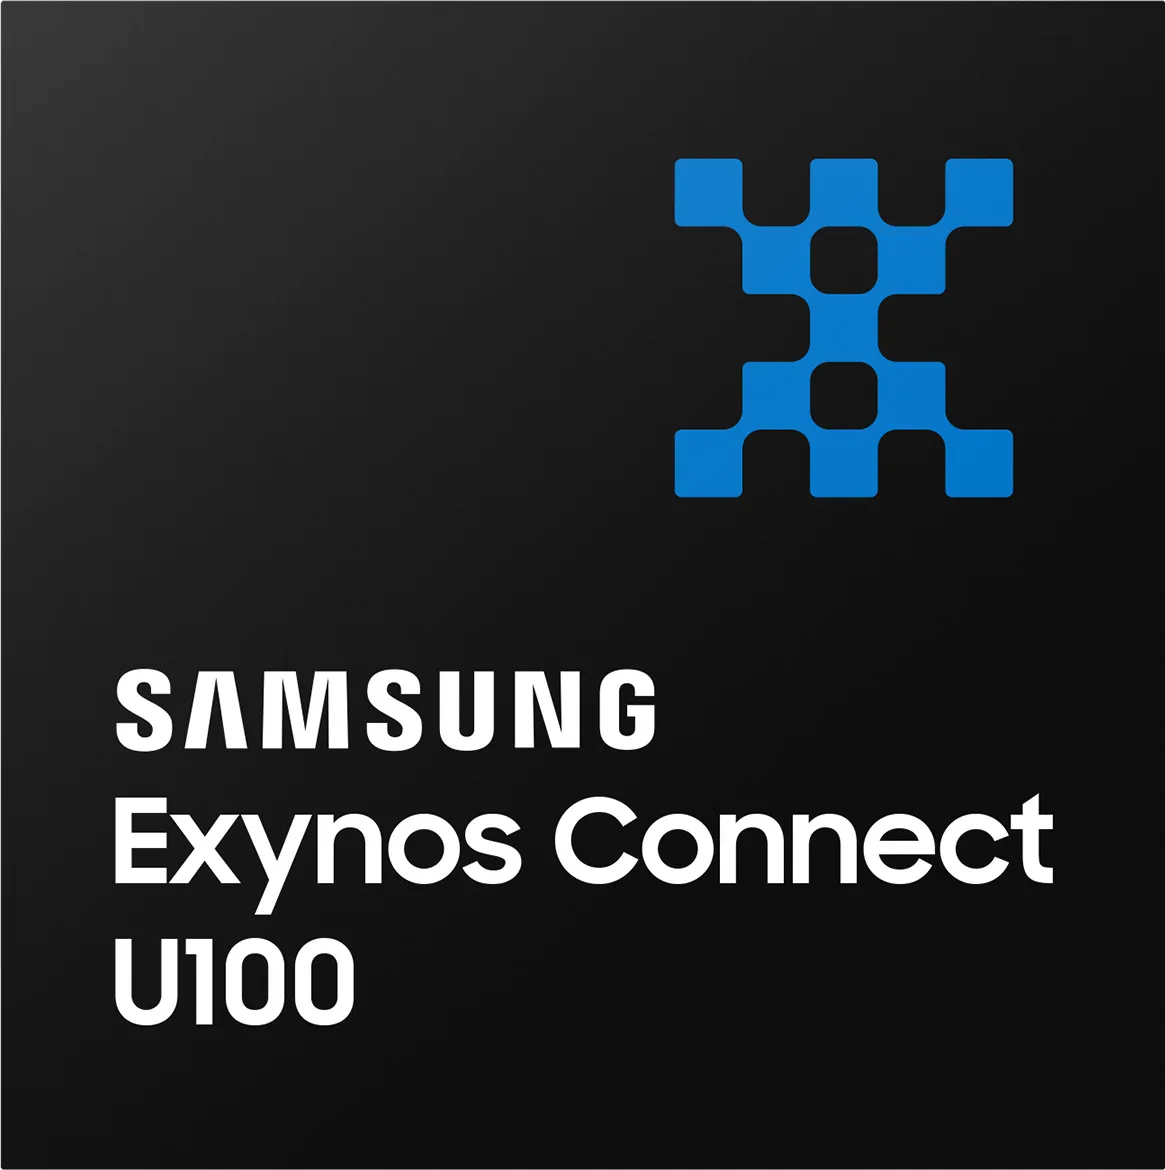 Exynos Connect U100 Press Release dl1 jpg